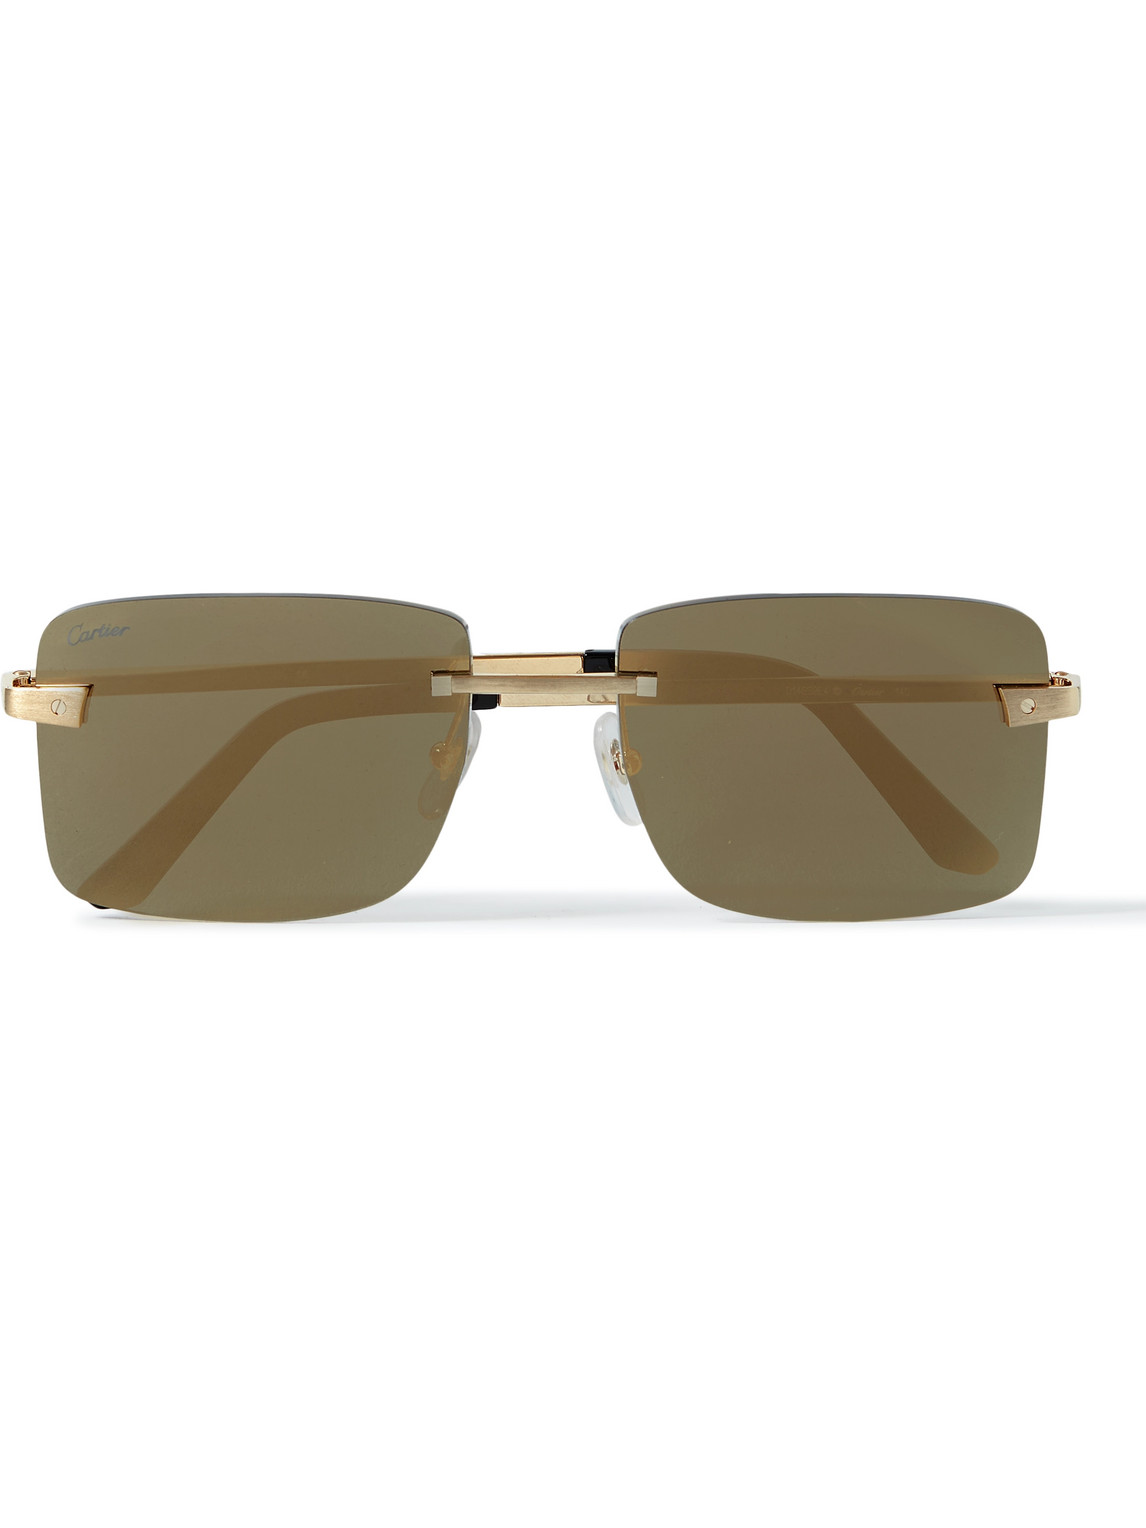 Cartier Santos Frameless Gold-tone Sunglasses